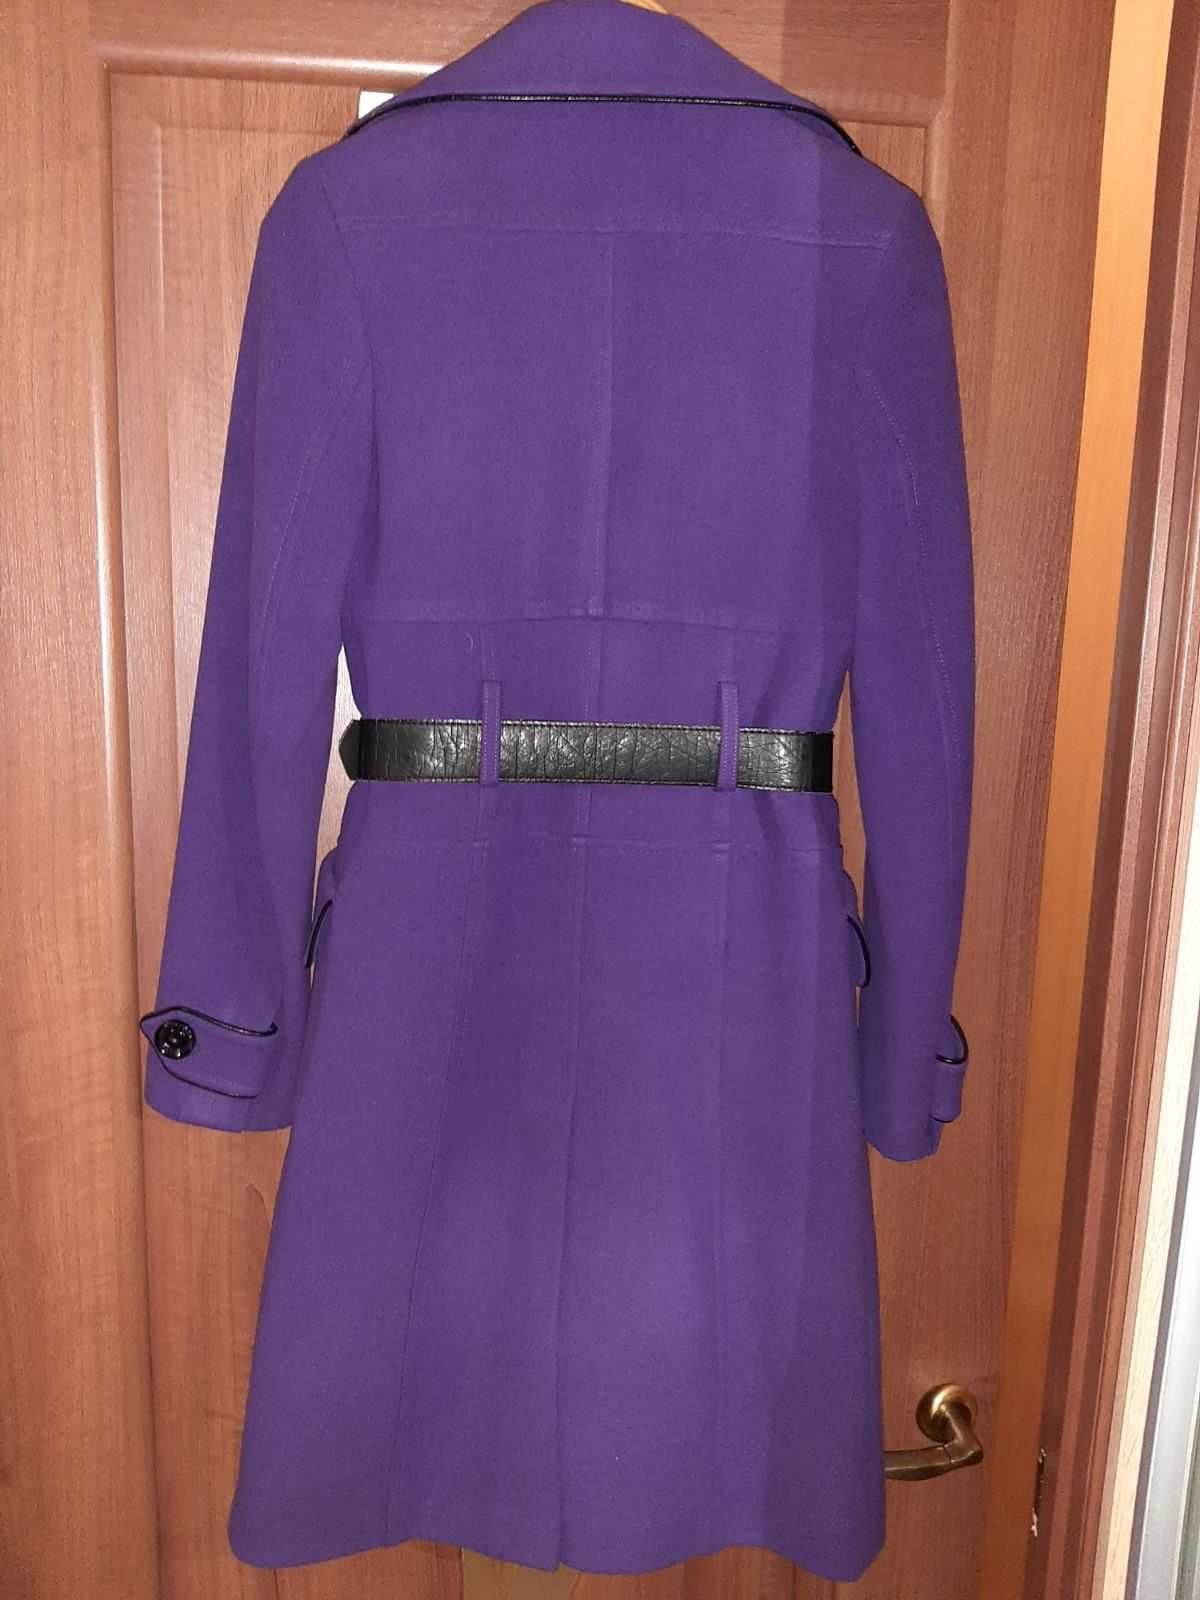 Драпове фiолетове пальто жiноче/Драповое фиолетовое пальто женское